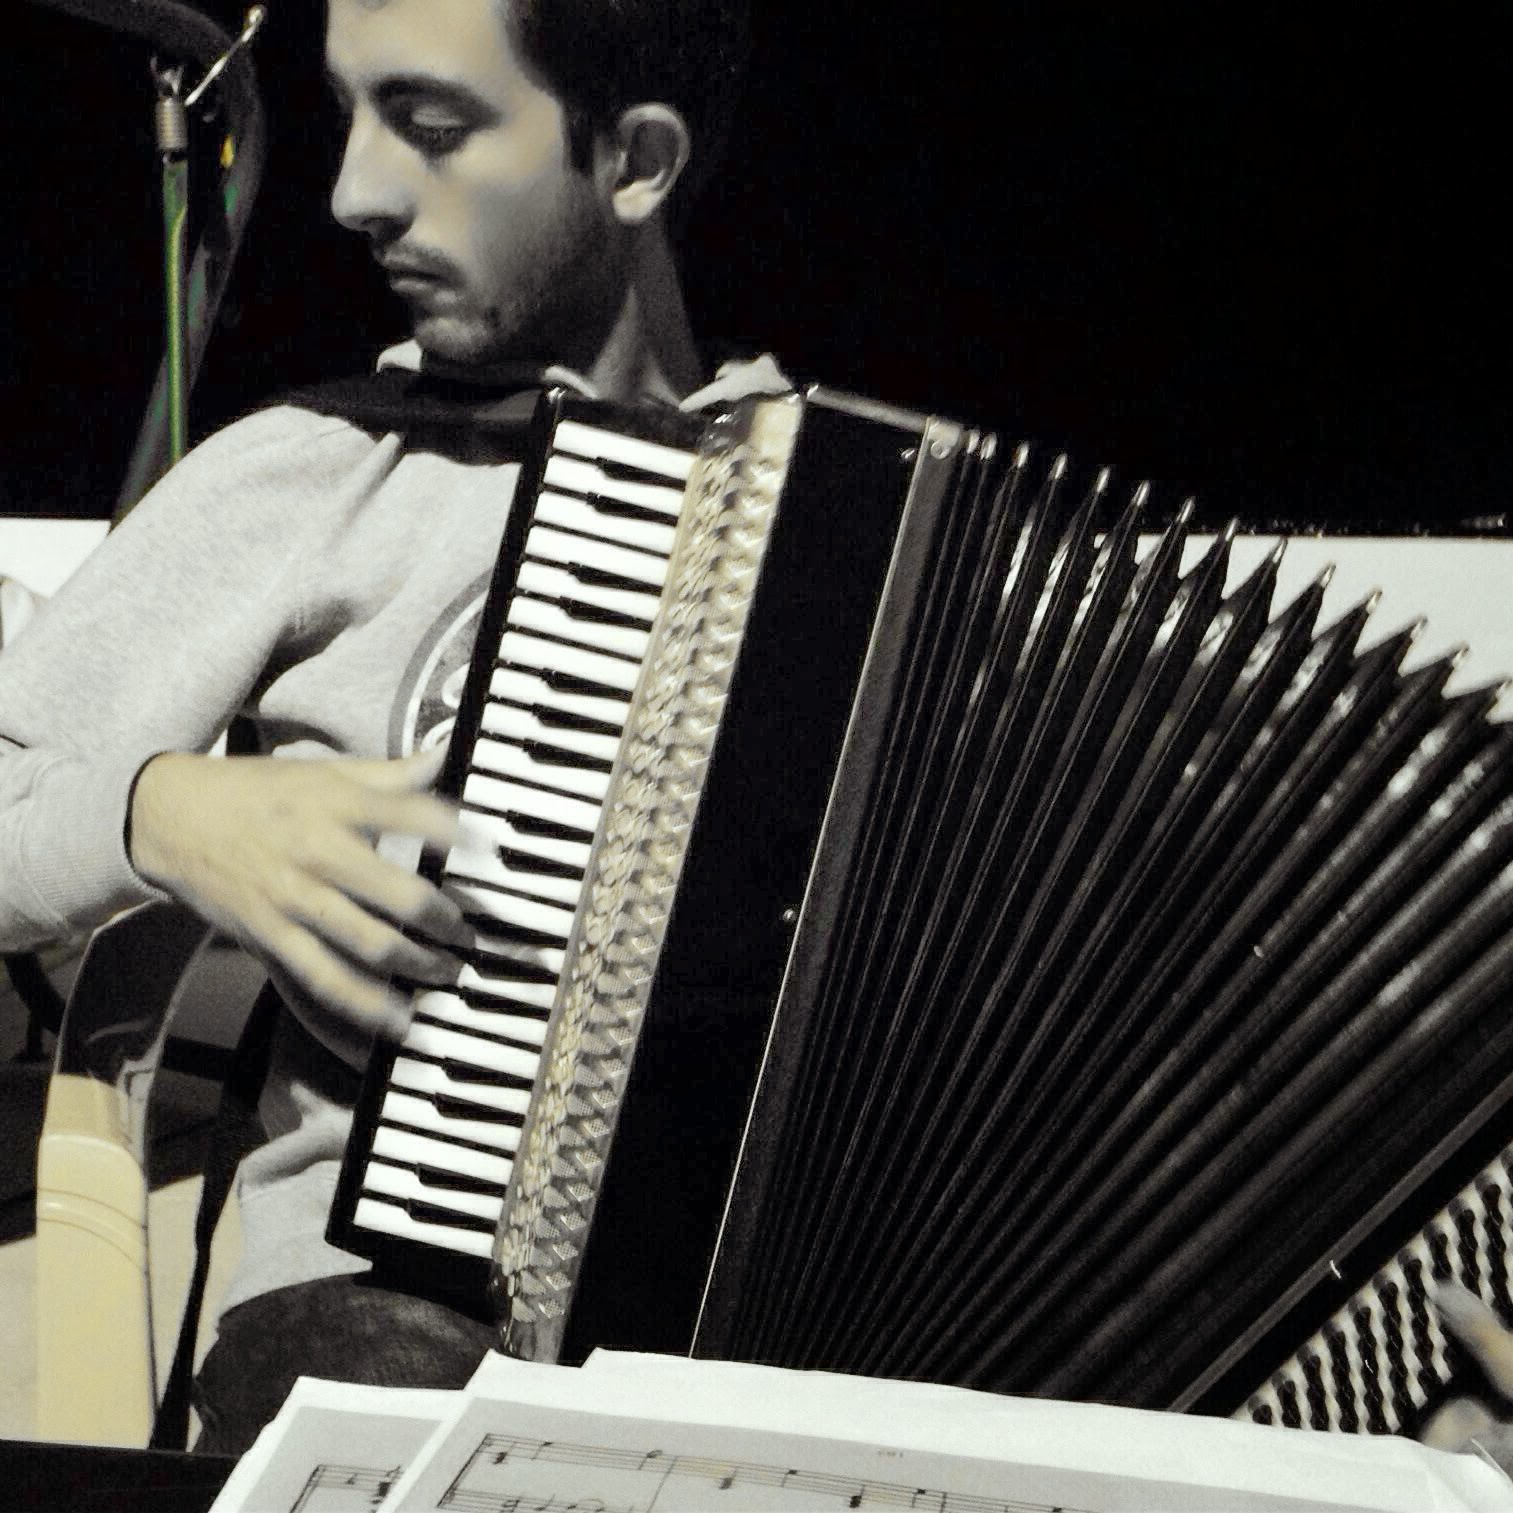 Ahmed Ahmed musician. Адыге музыка. Кавказские музыки на телефон